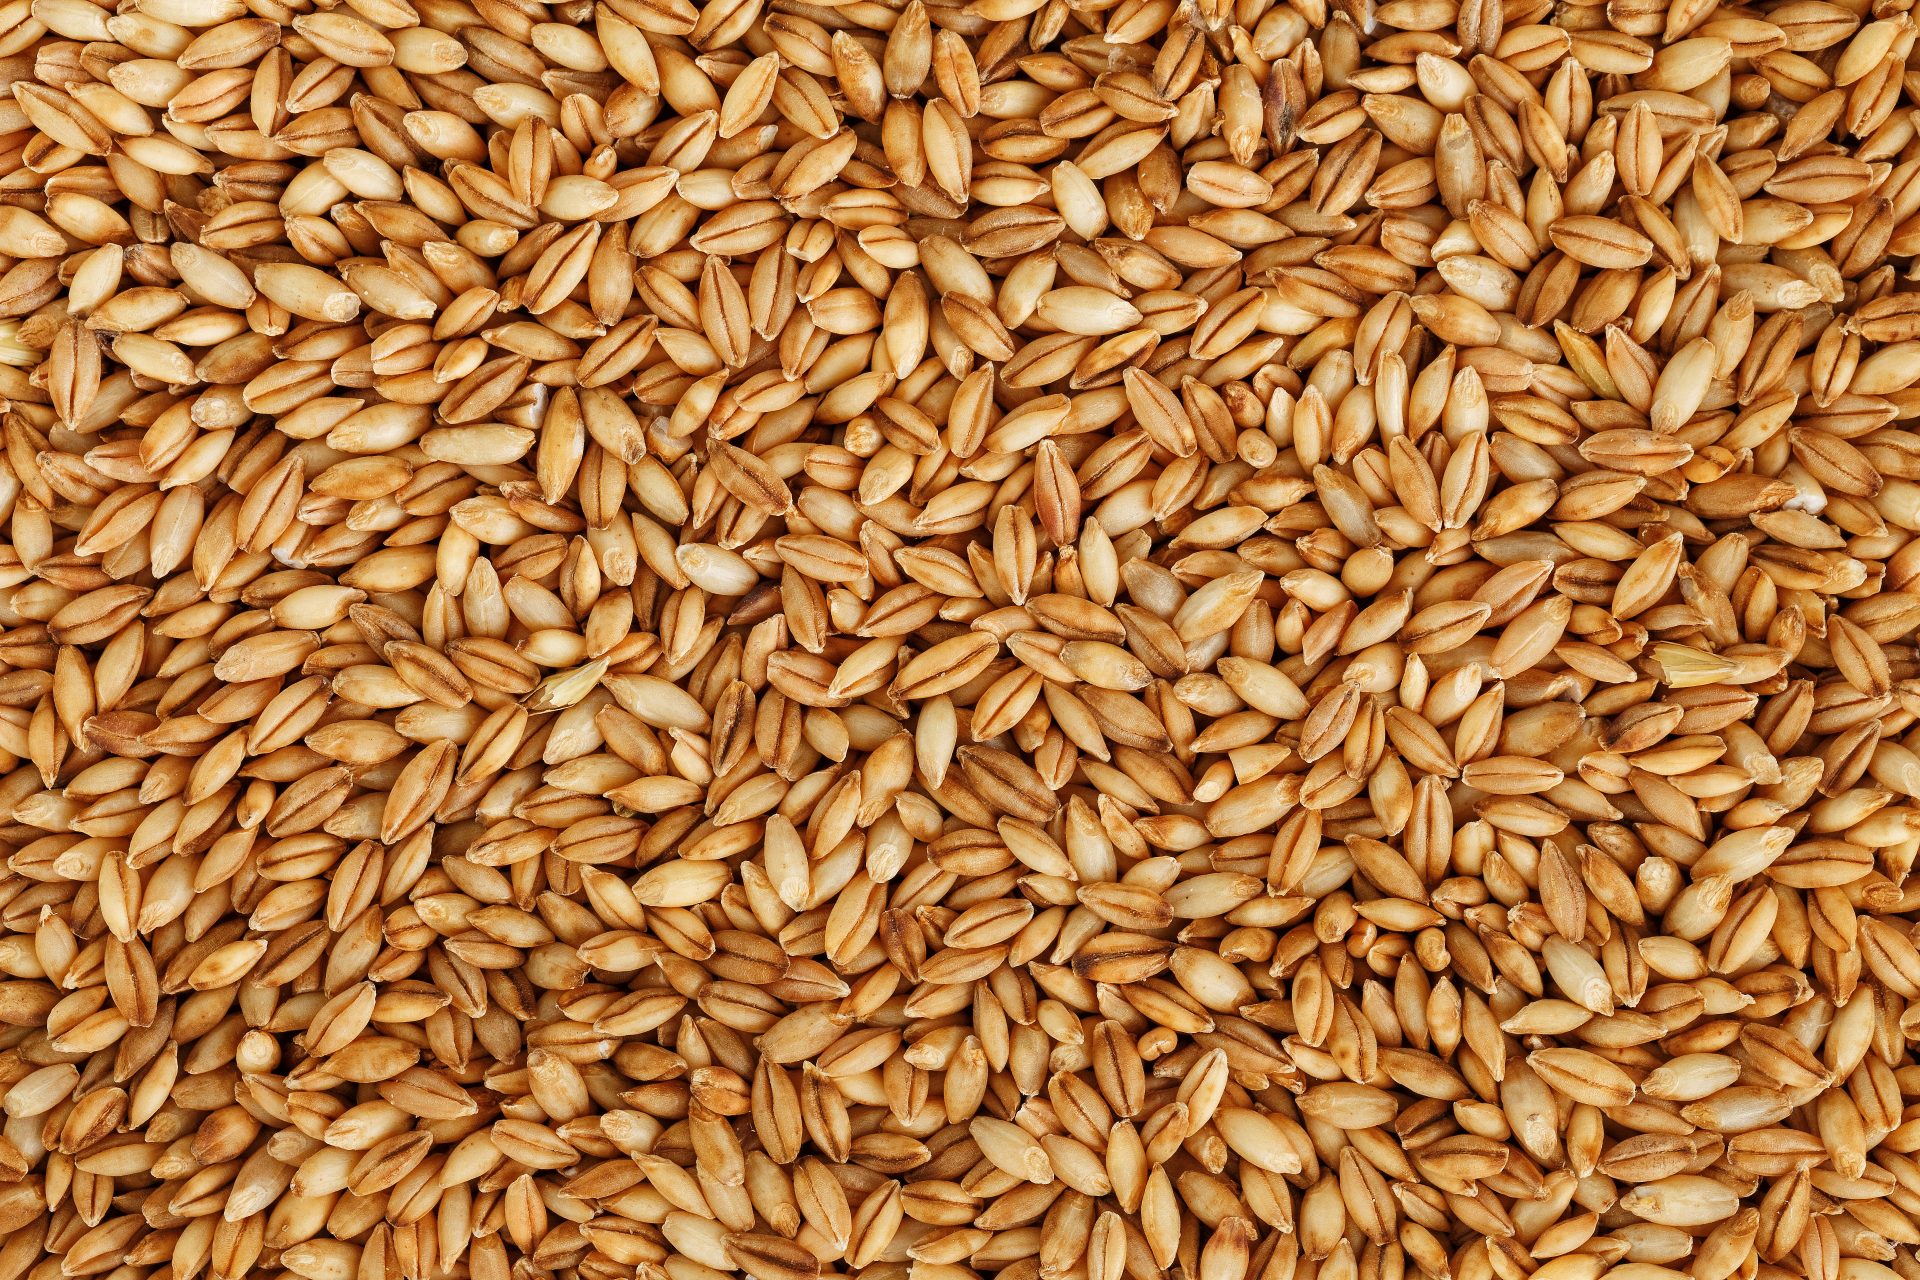 Close up of Barley Grains